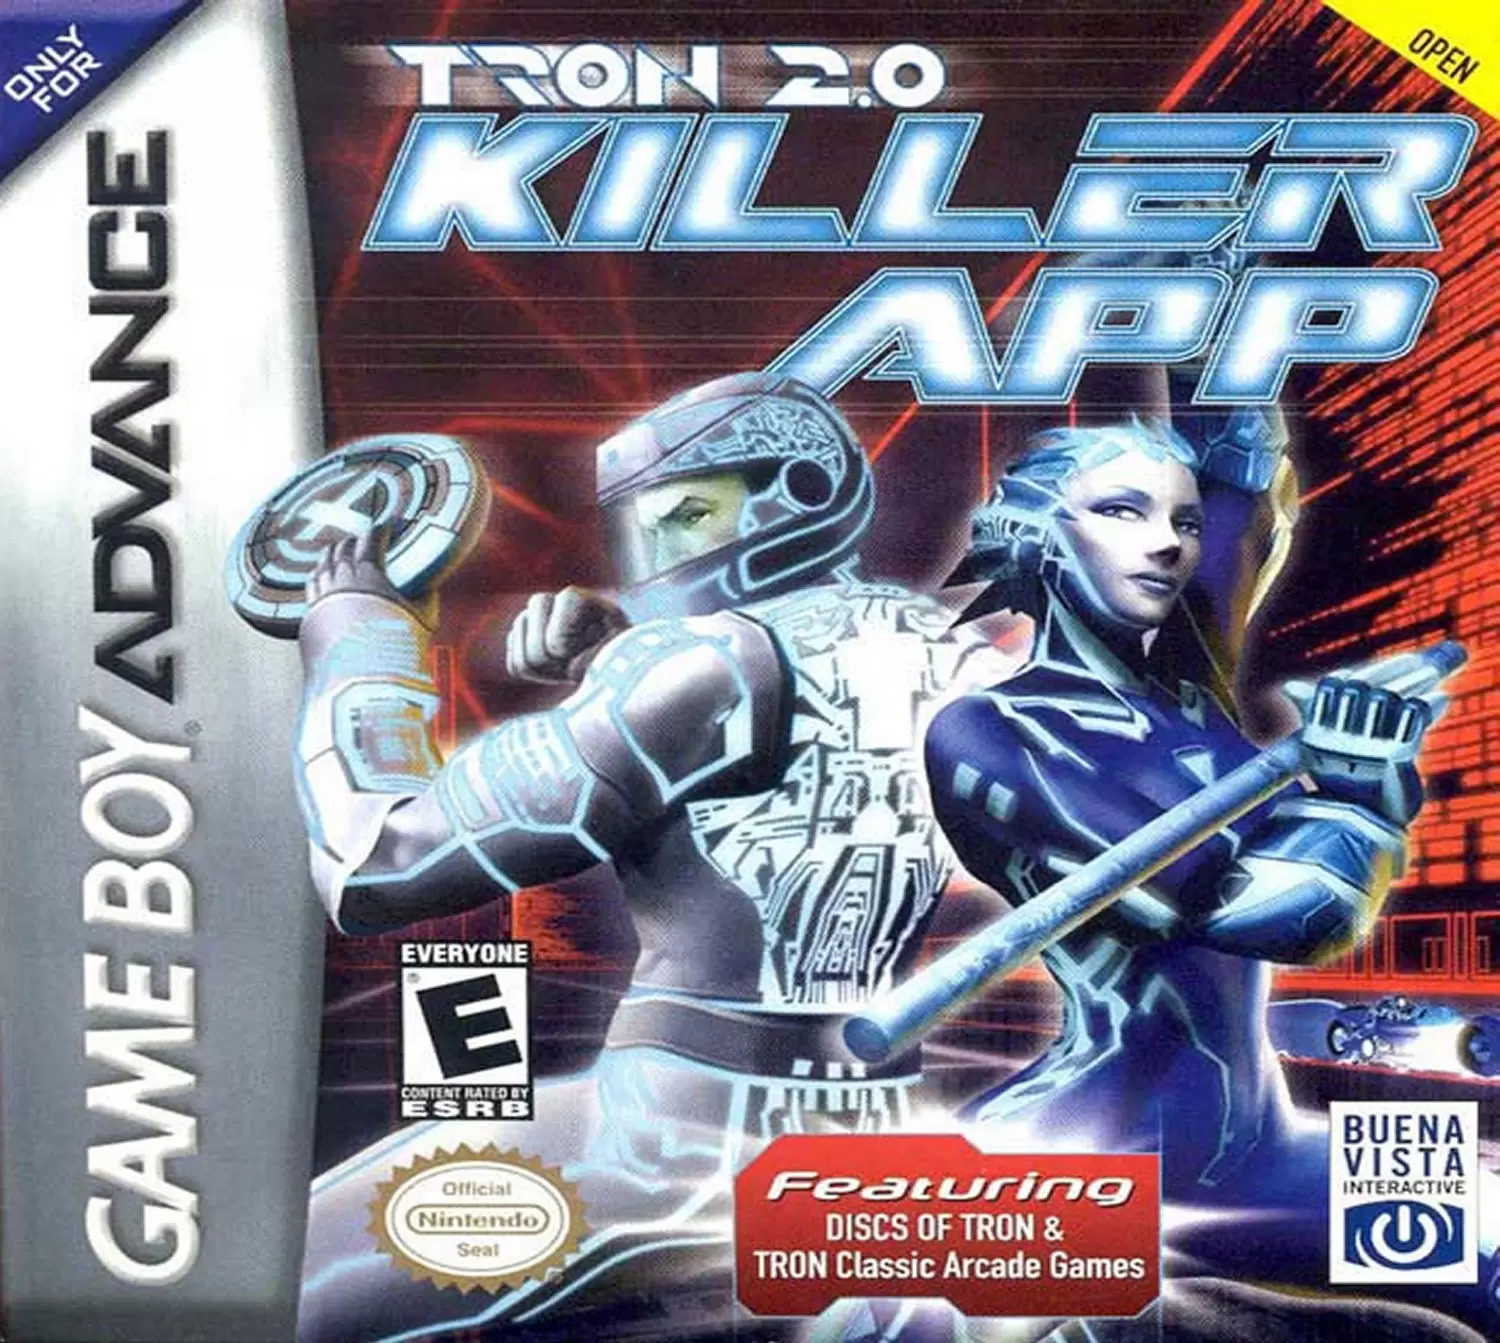 Game Boy Advance Games - Tron 2.0: Killer App